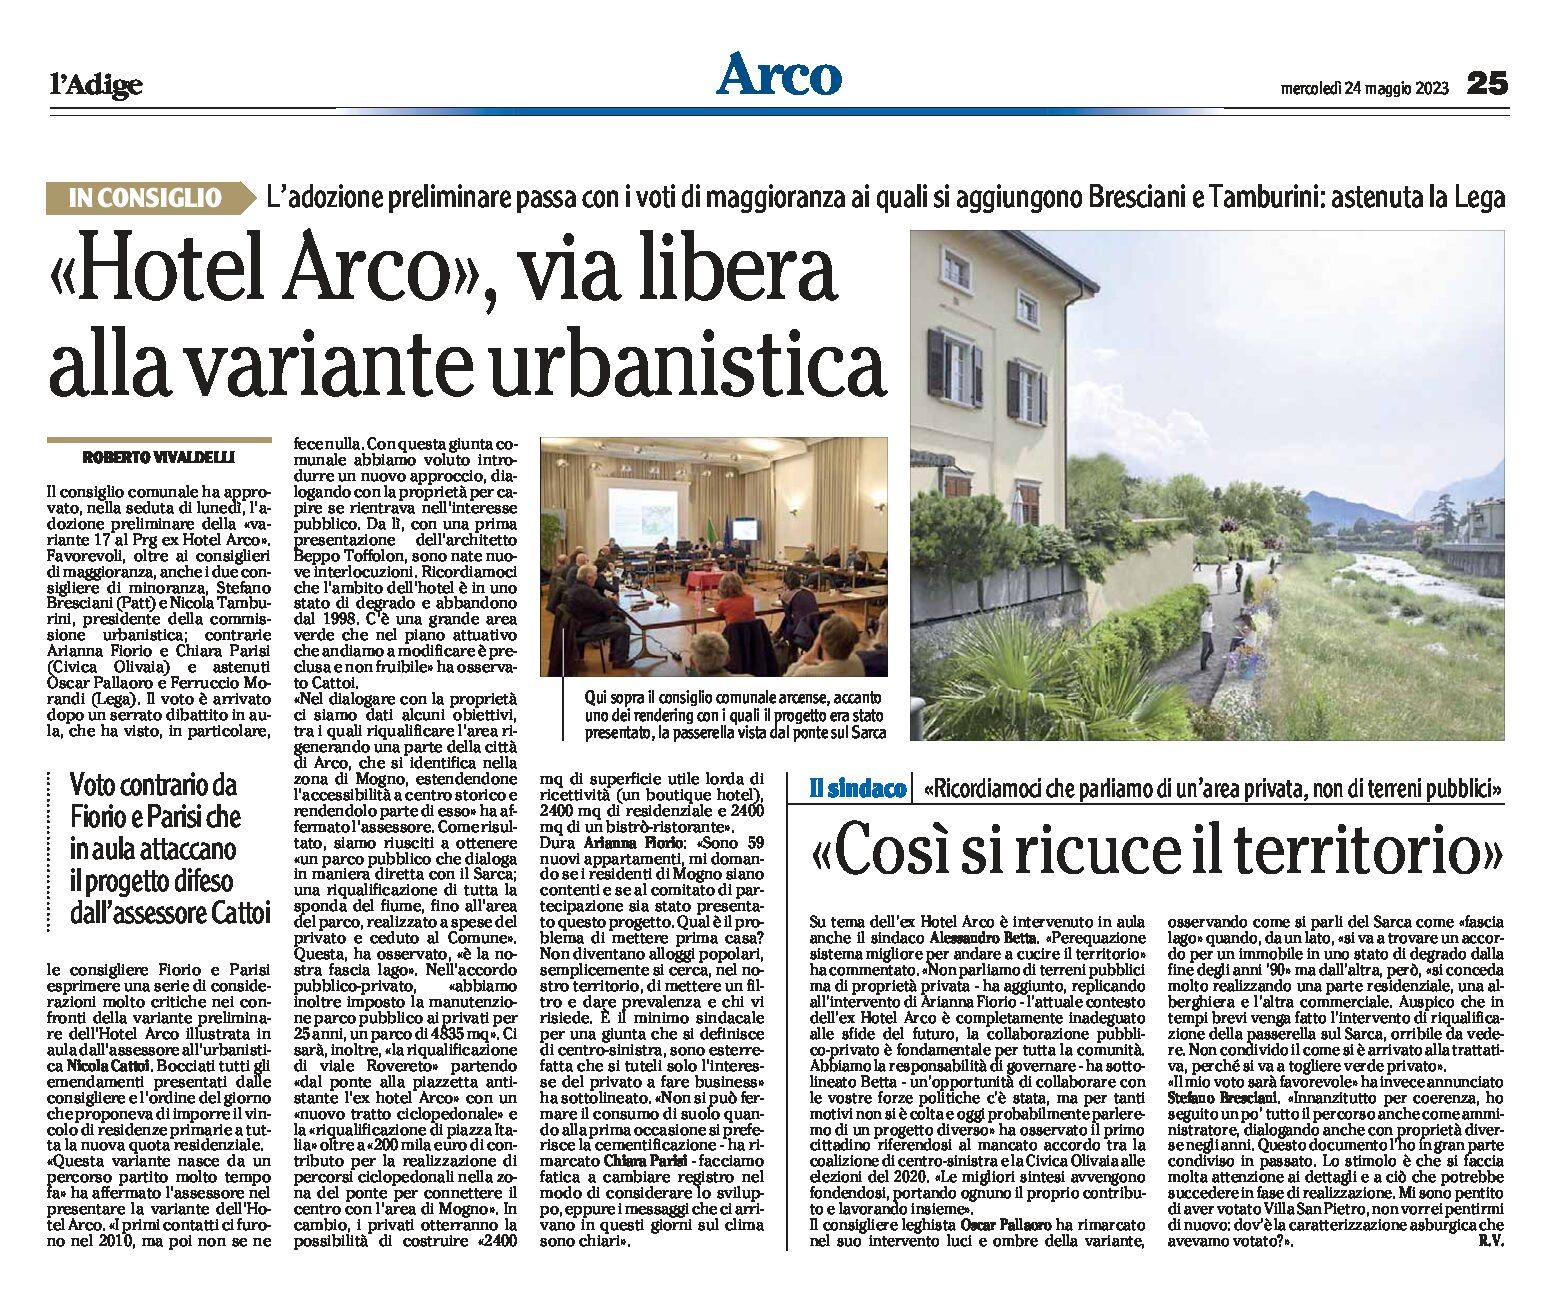 Hotel Arco: via libera alla variante urbanistica